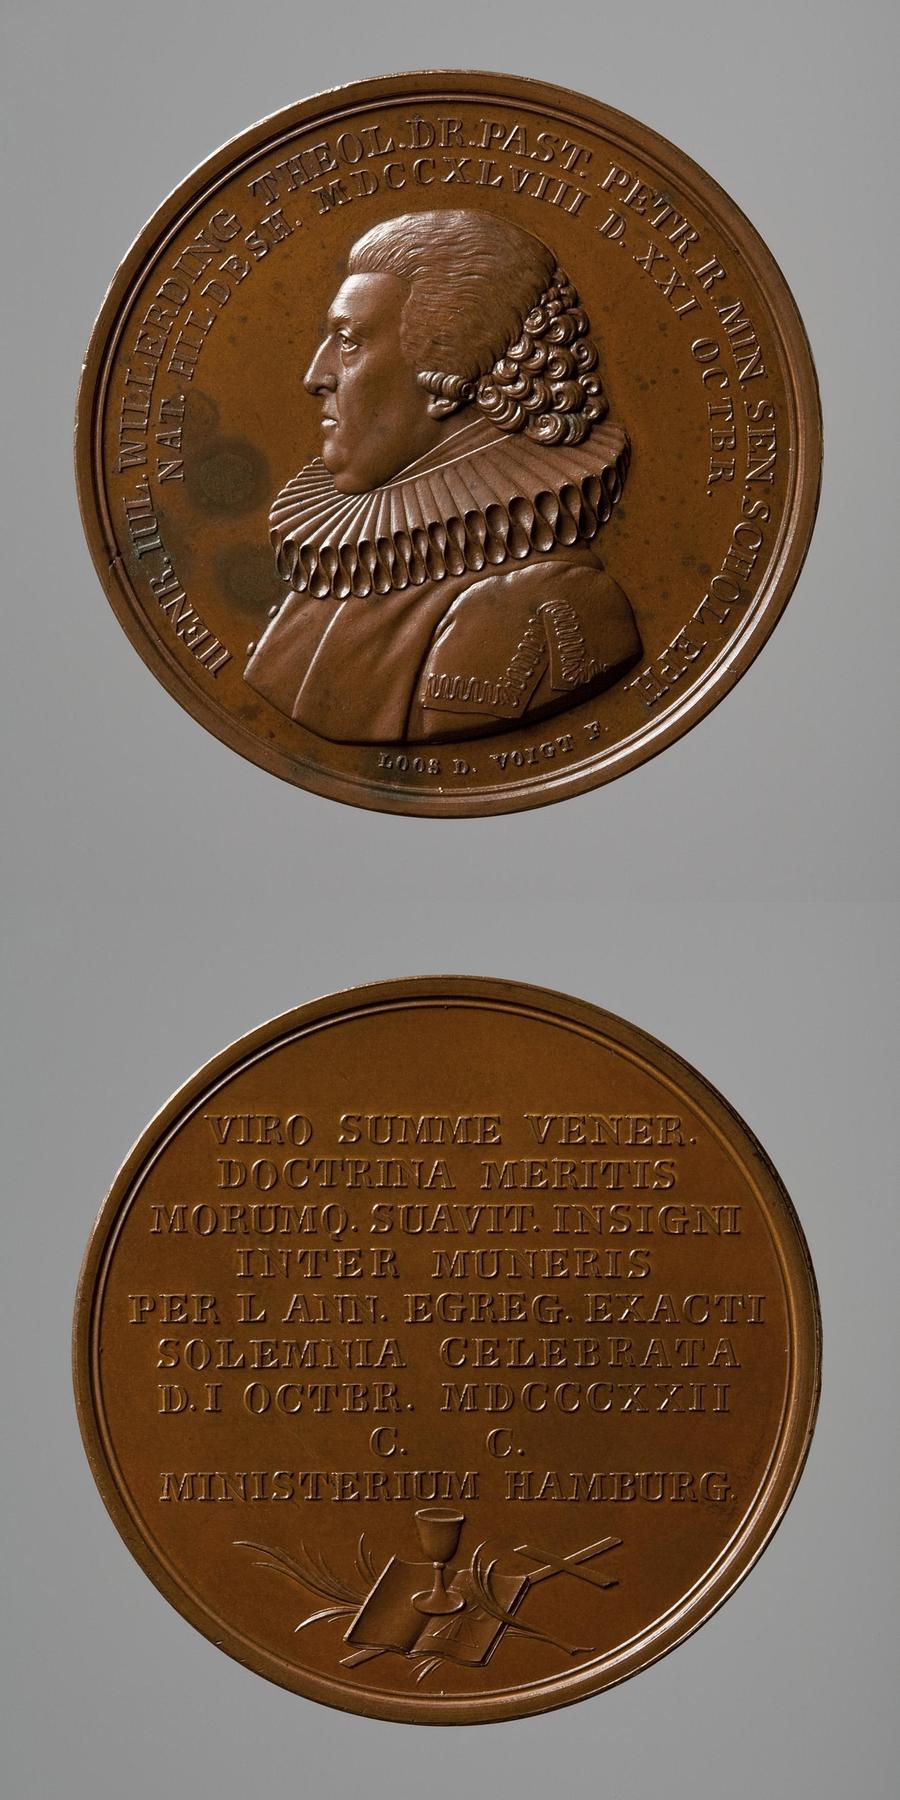 Medaljens forside: Pastor Heinrich Julius Willerding. Medaljens bagside: Kristendommens insignier, F115